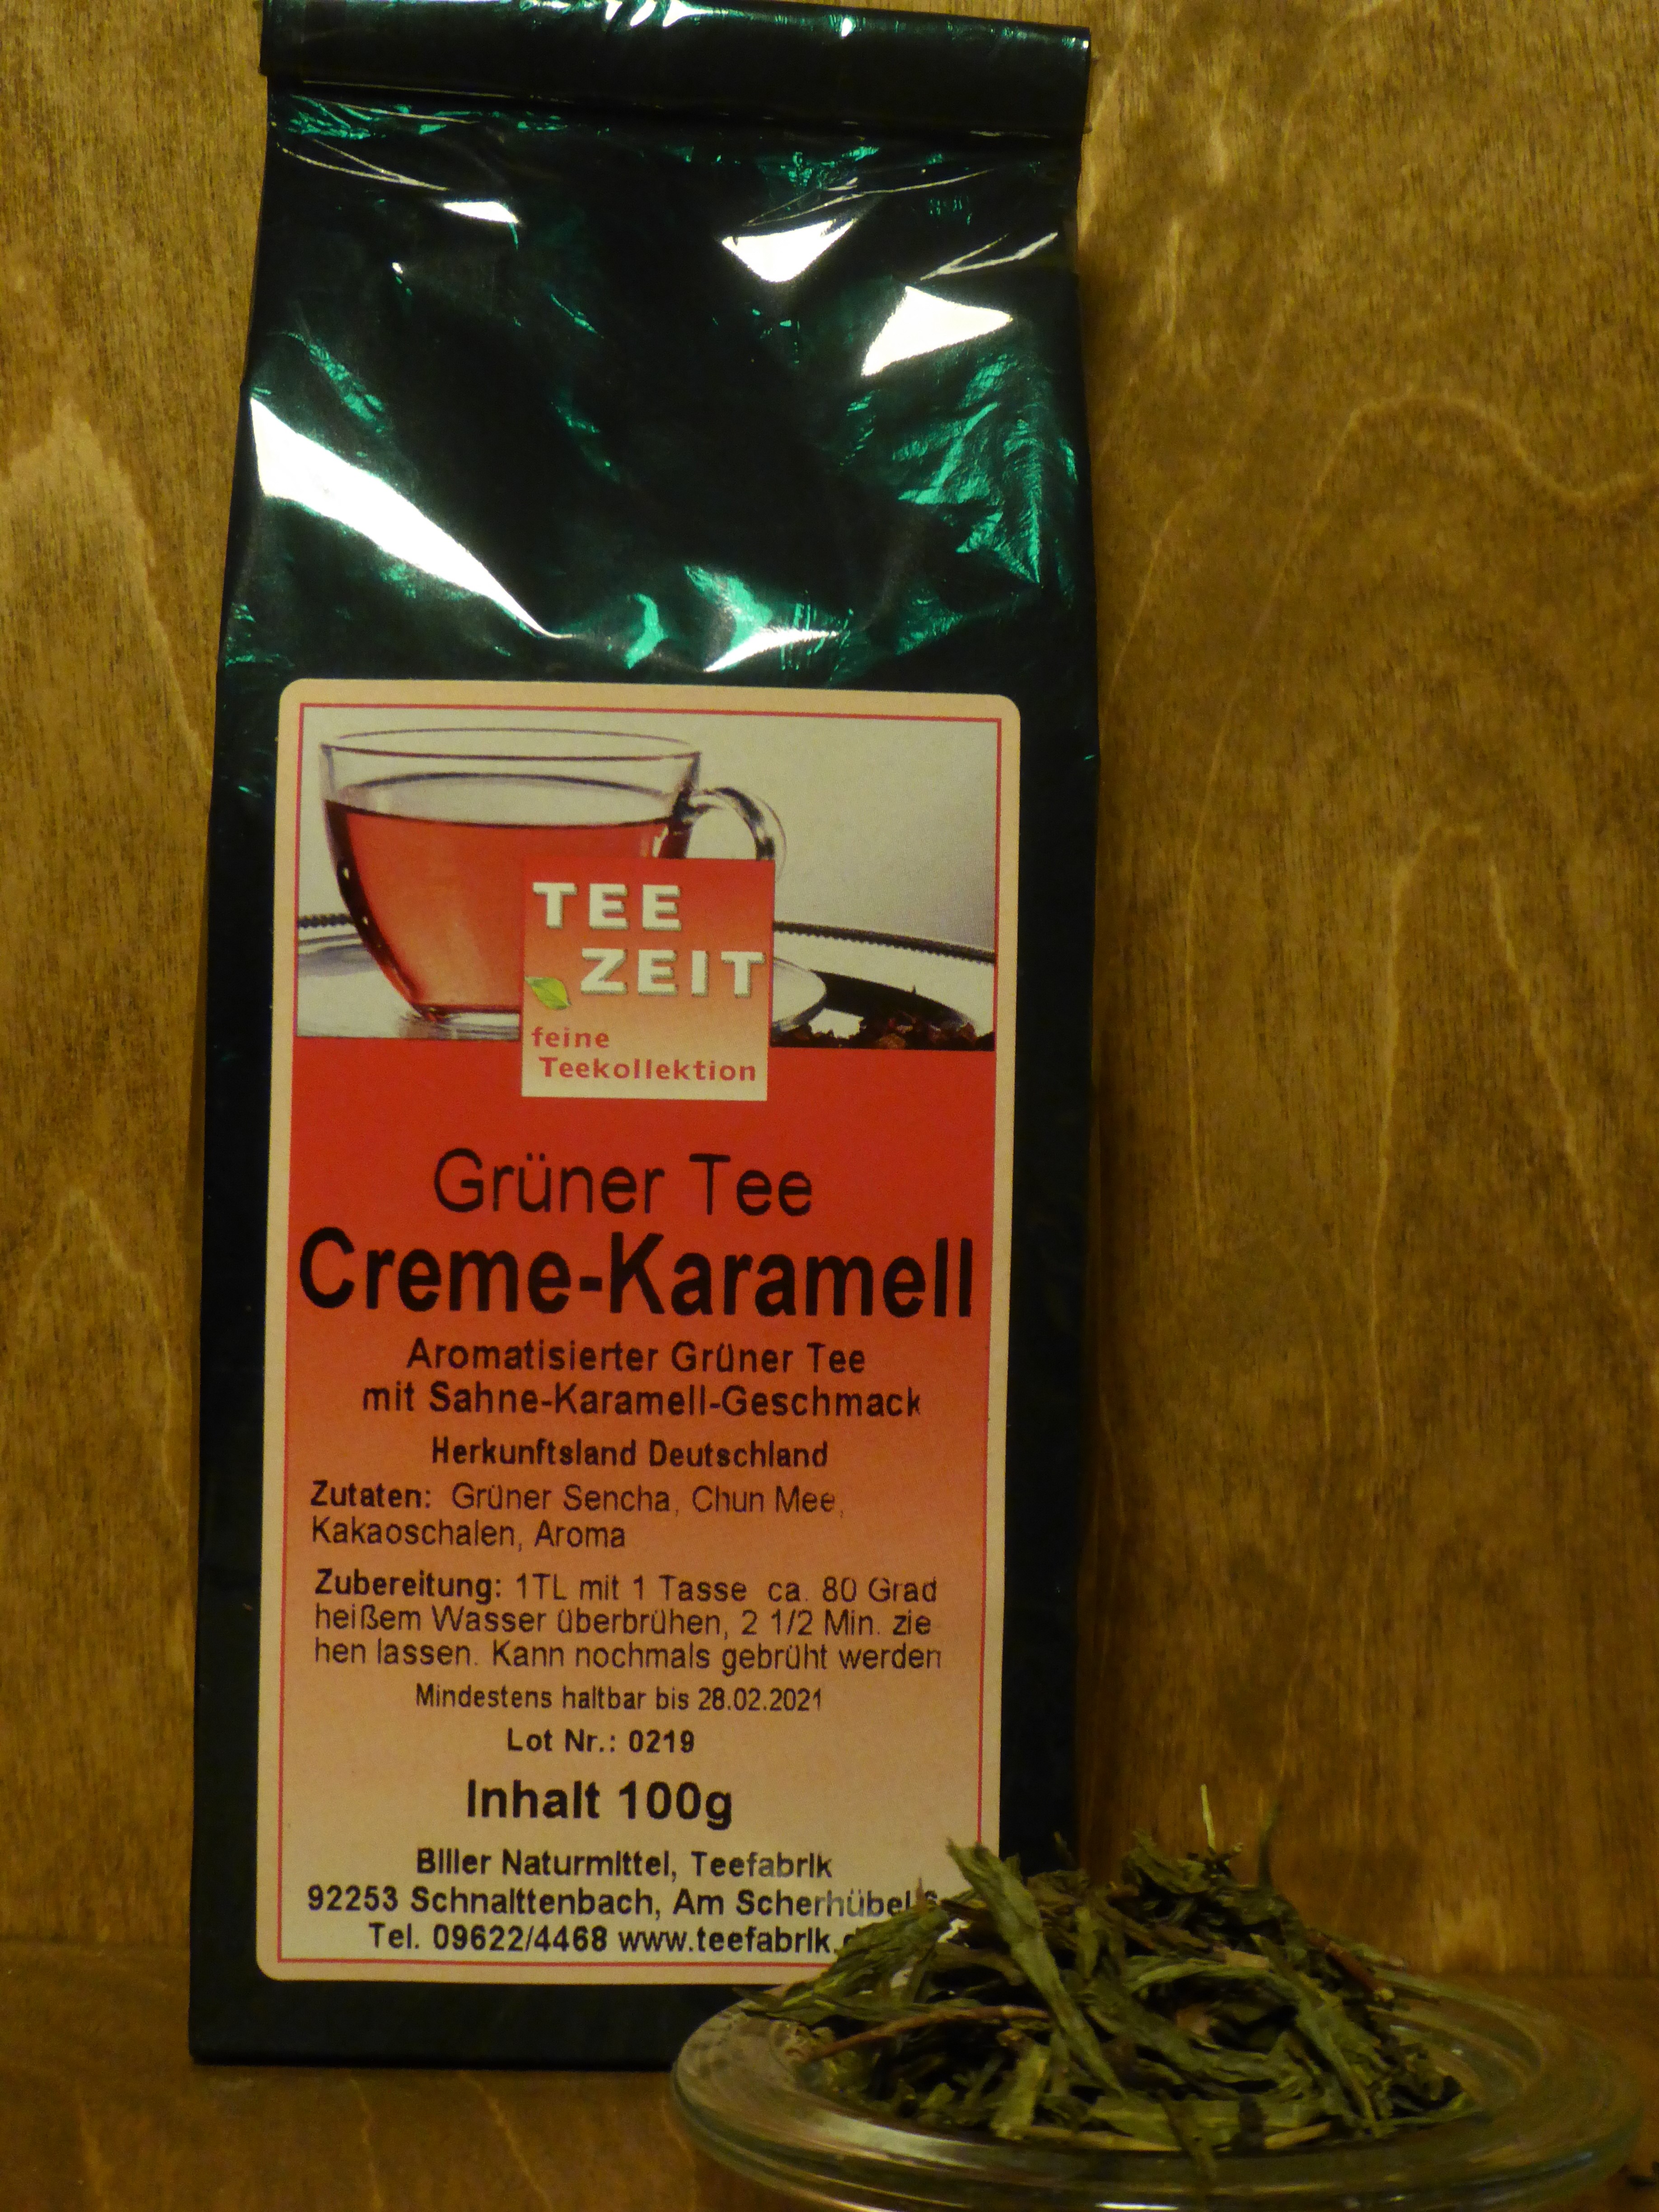 Grüner Tee Creme-Karamel - Biller Naturmittel